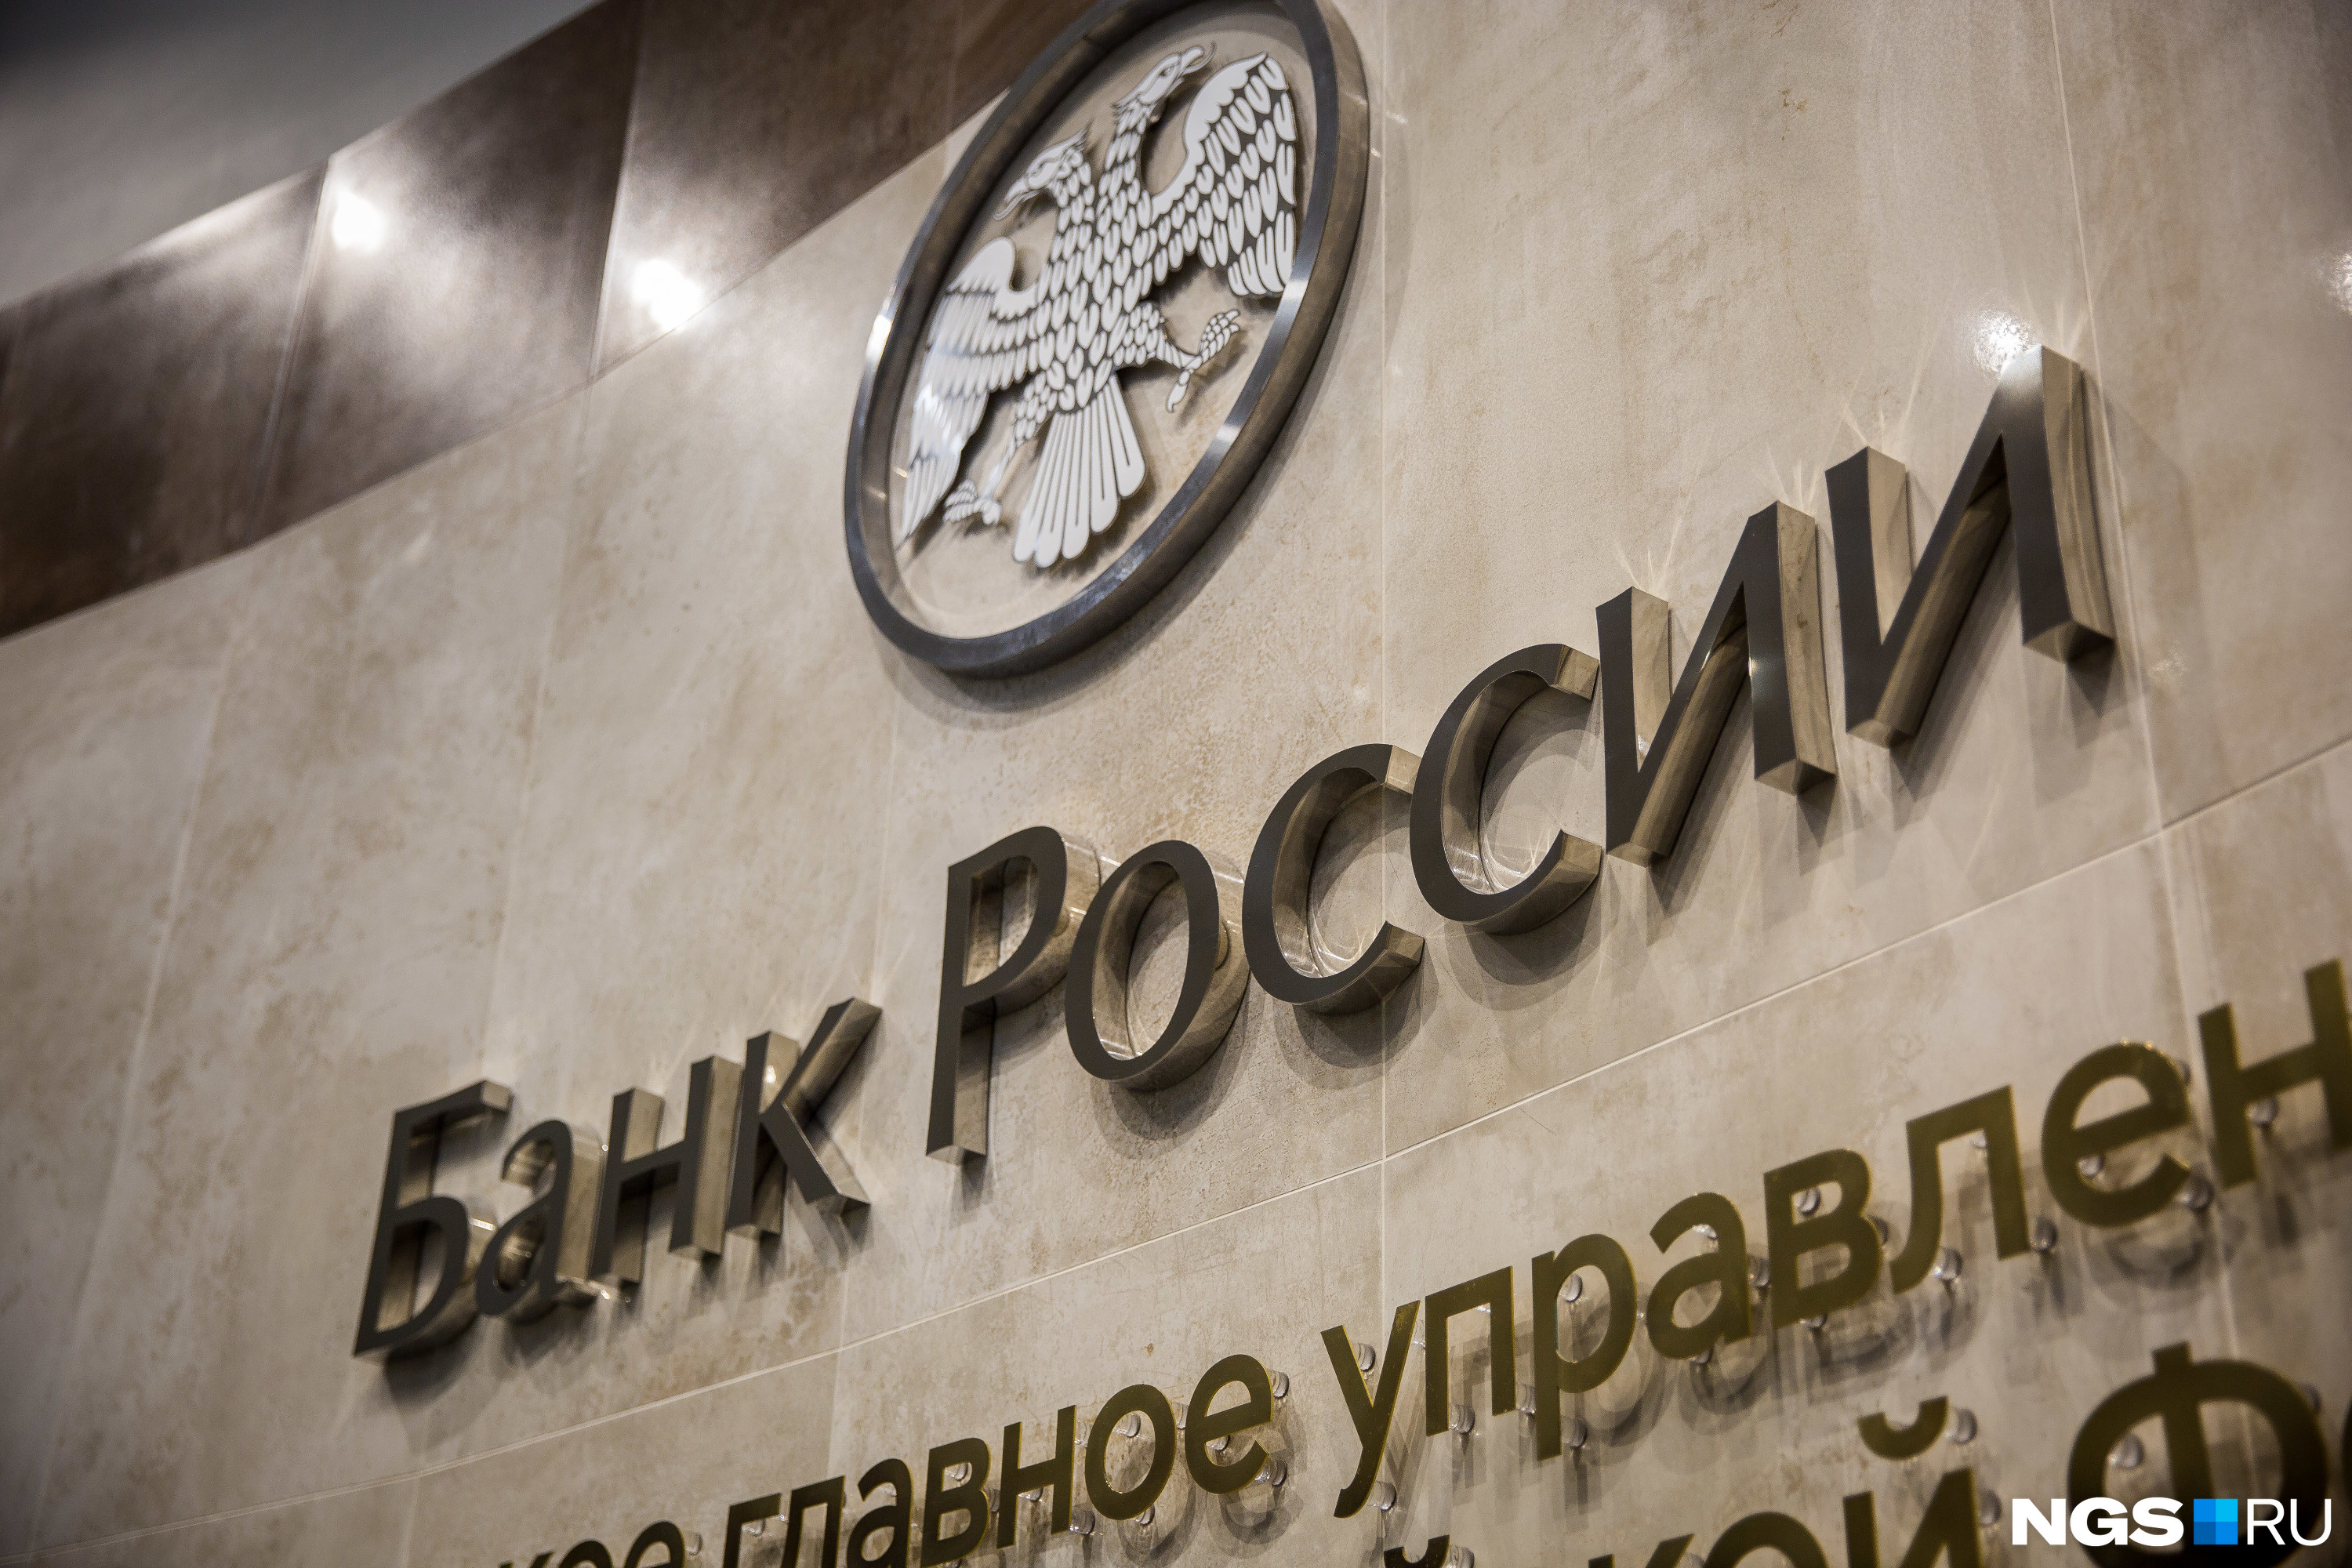 Банк России проинформировал кредитные организации о необходимости проведения работы по исключению возможностей для ущемления прав потребителей и недопущению подобных практик